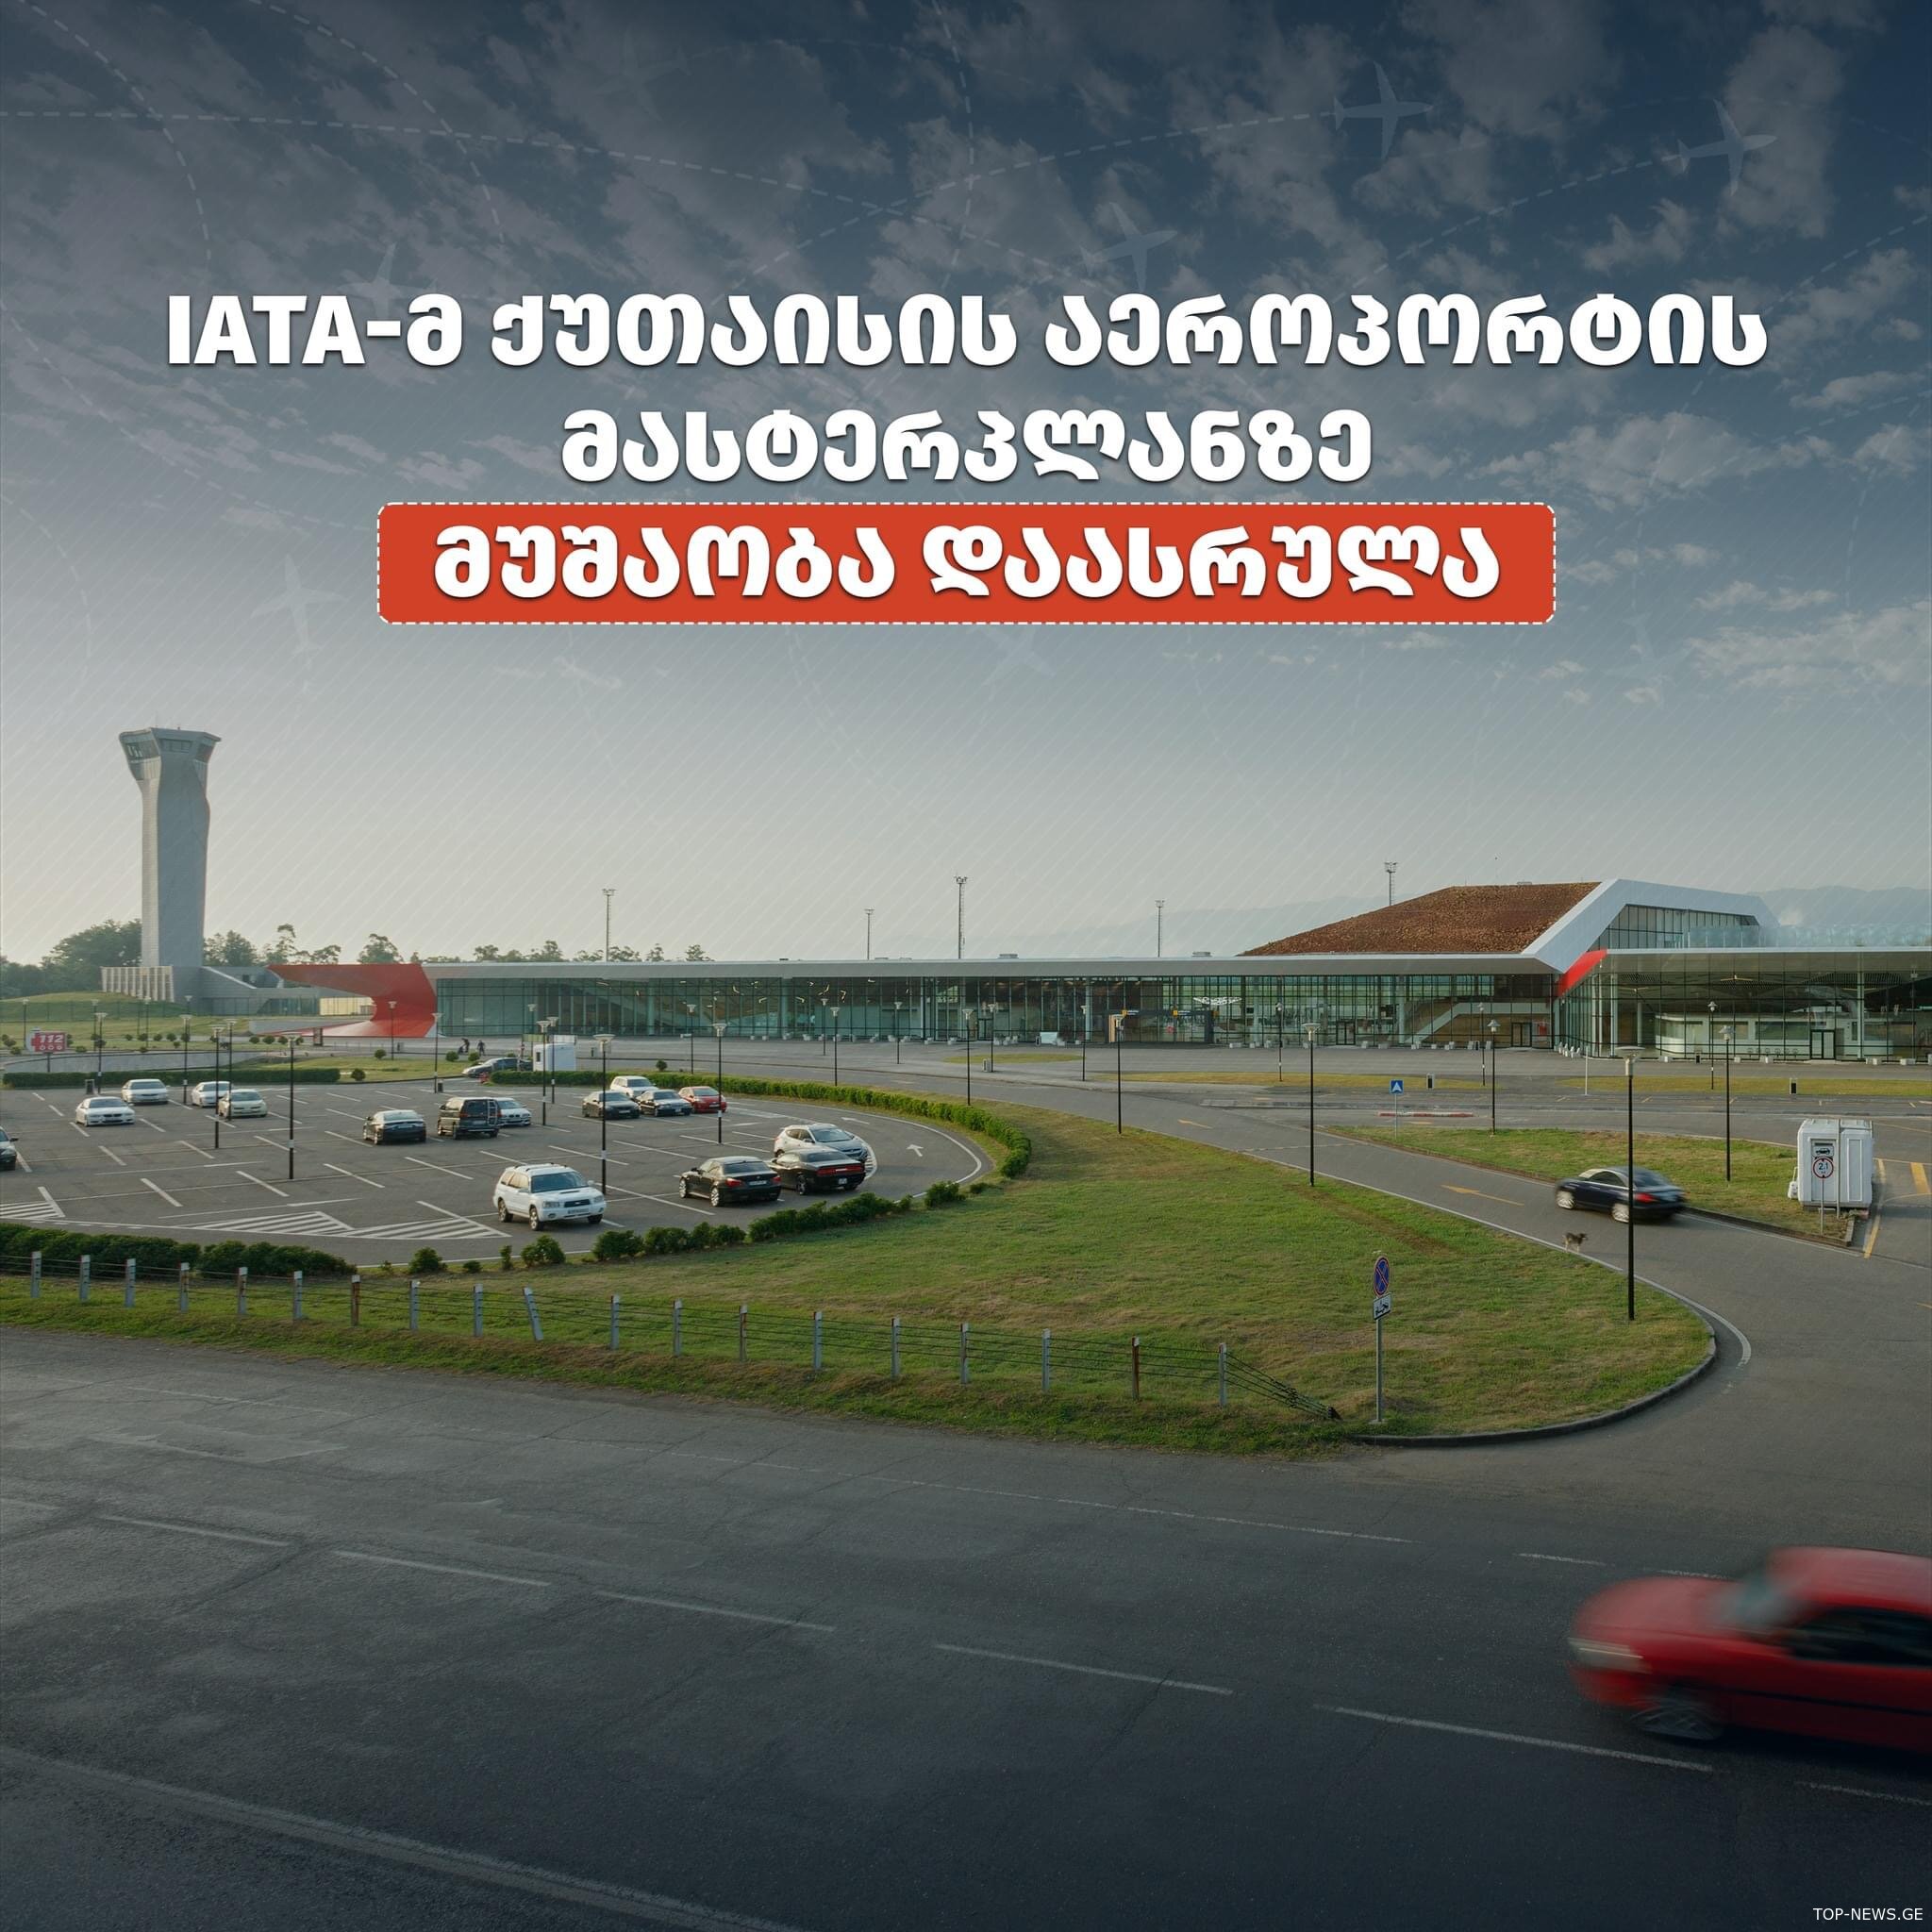 რას ითვალისწინებს ქუთაისის საერთაშორისო აეროპორტის განვითარების 20-წლიანი გეგმა?